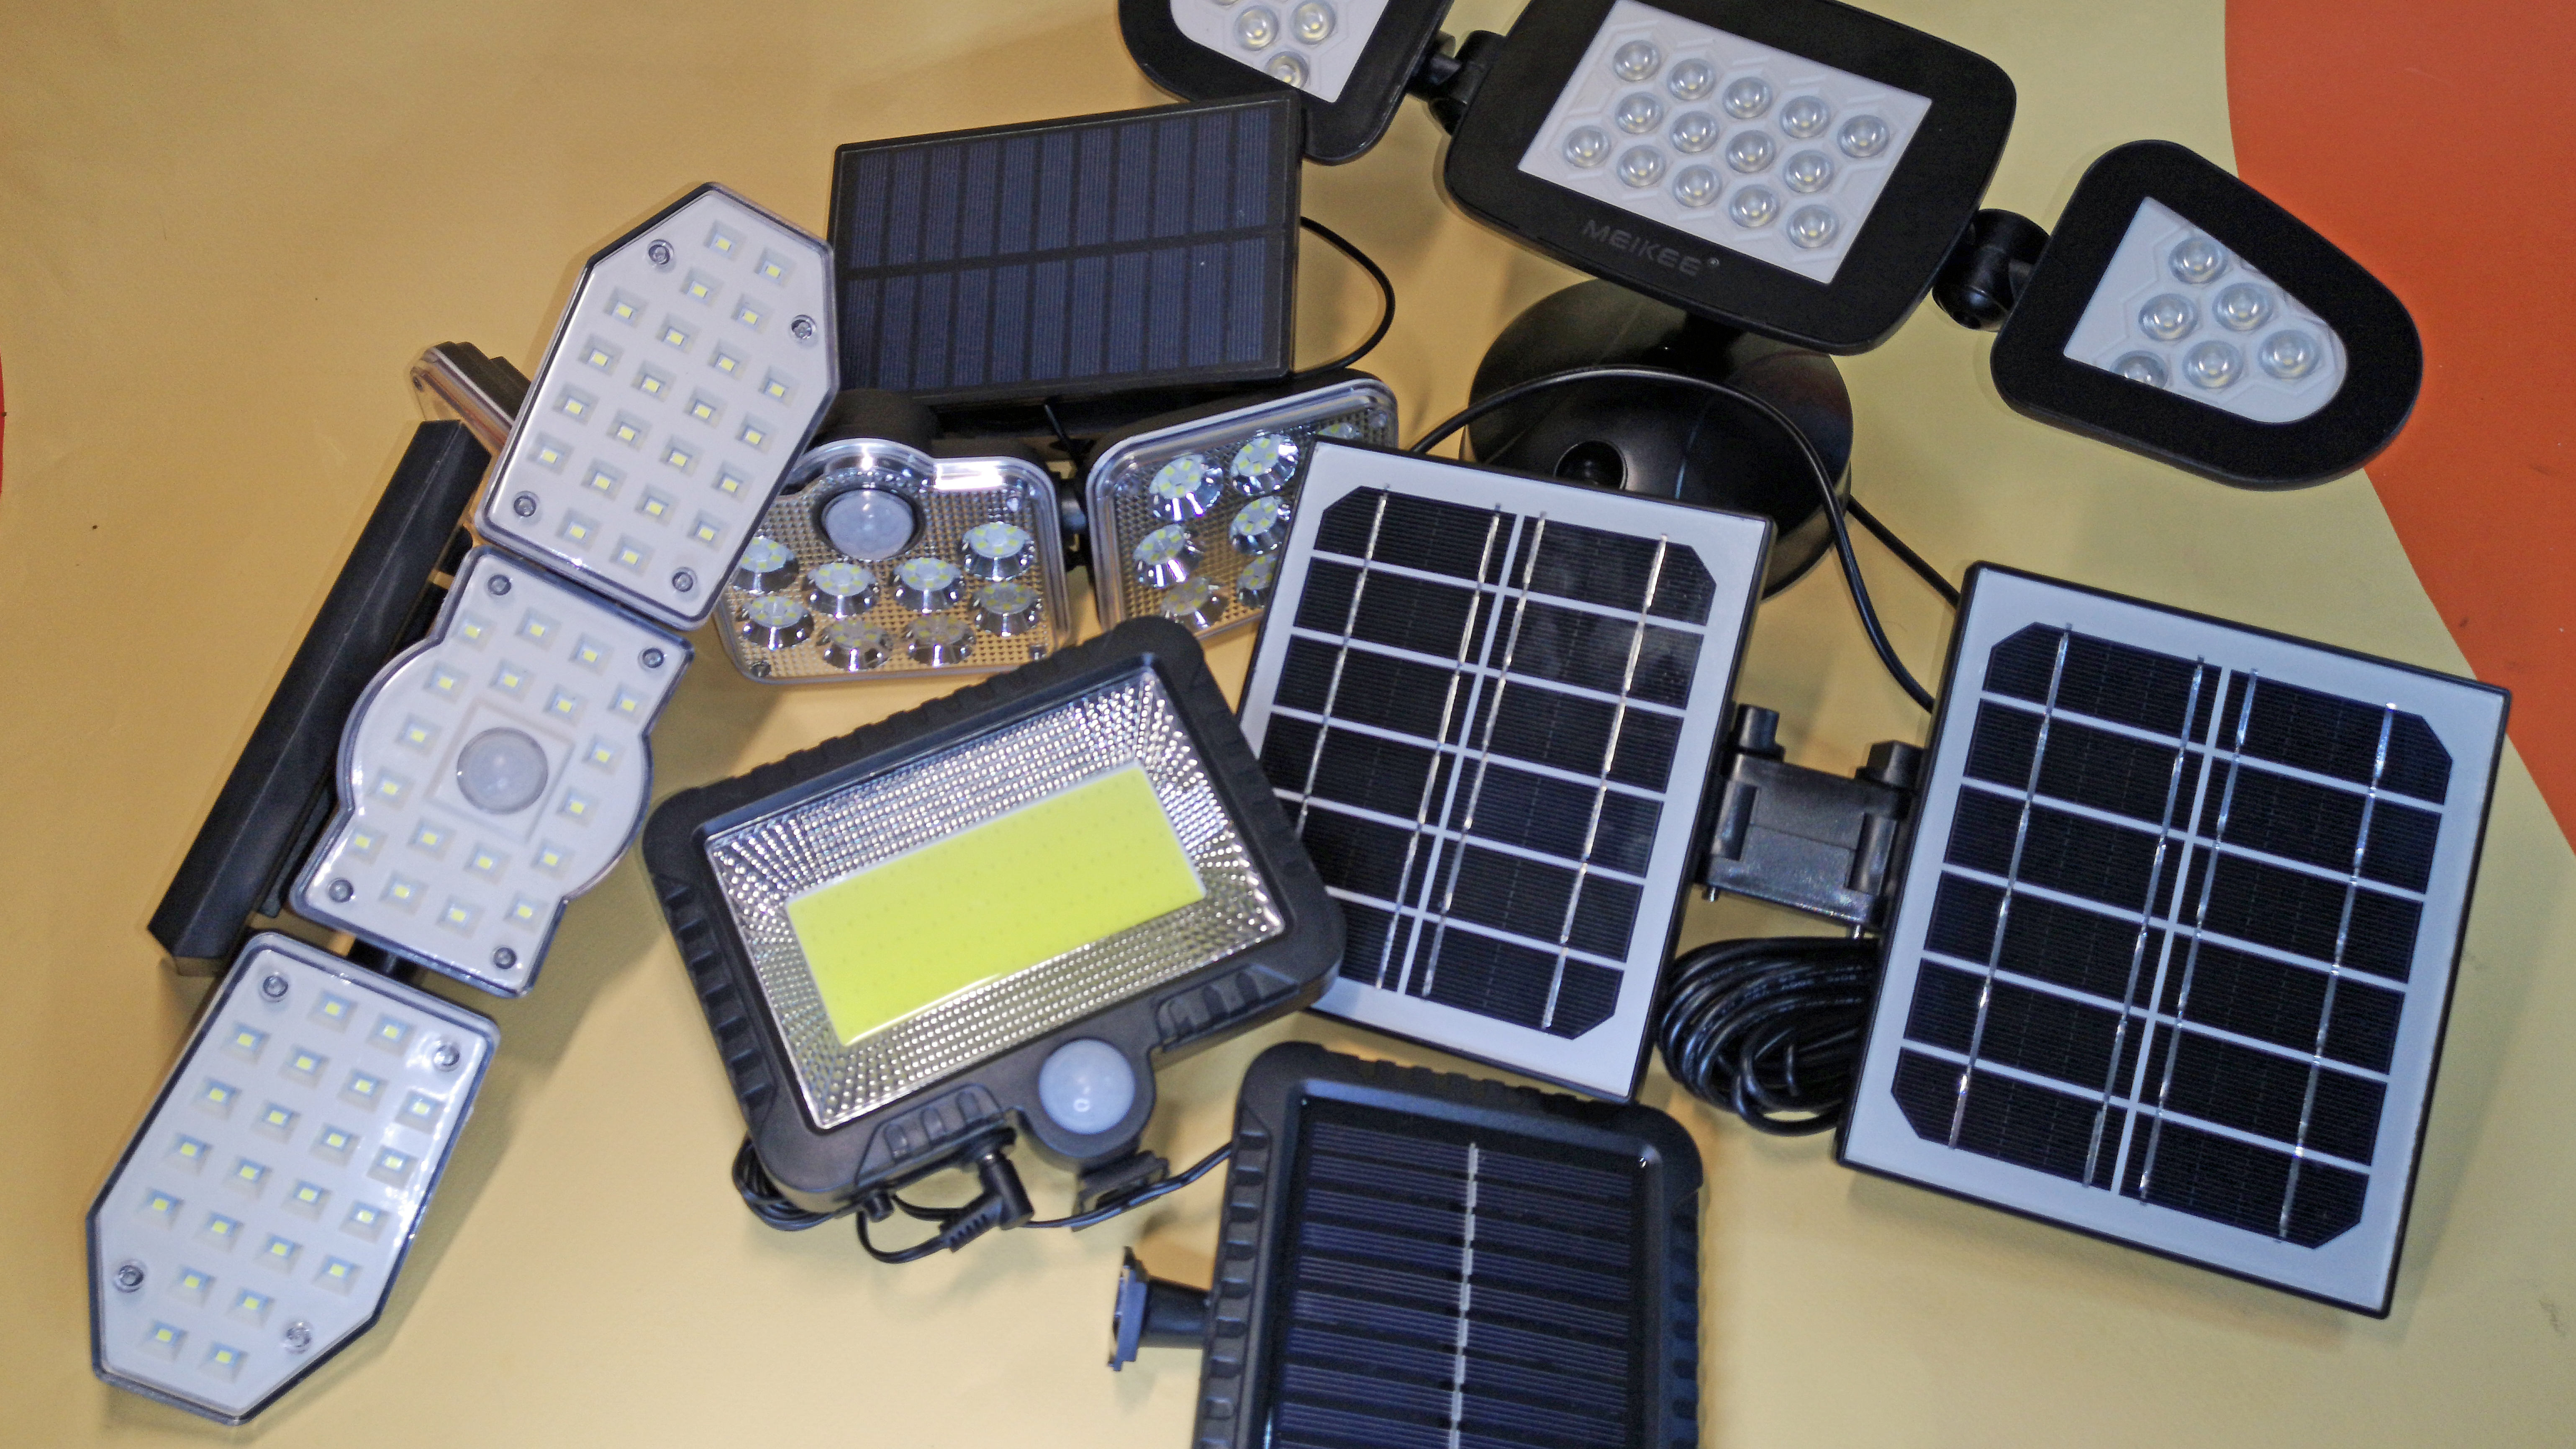 Günstig, hell und autark: Solarlampen & für außen ab 10 Euro | TechStage